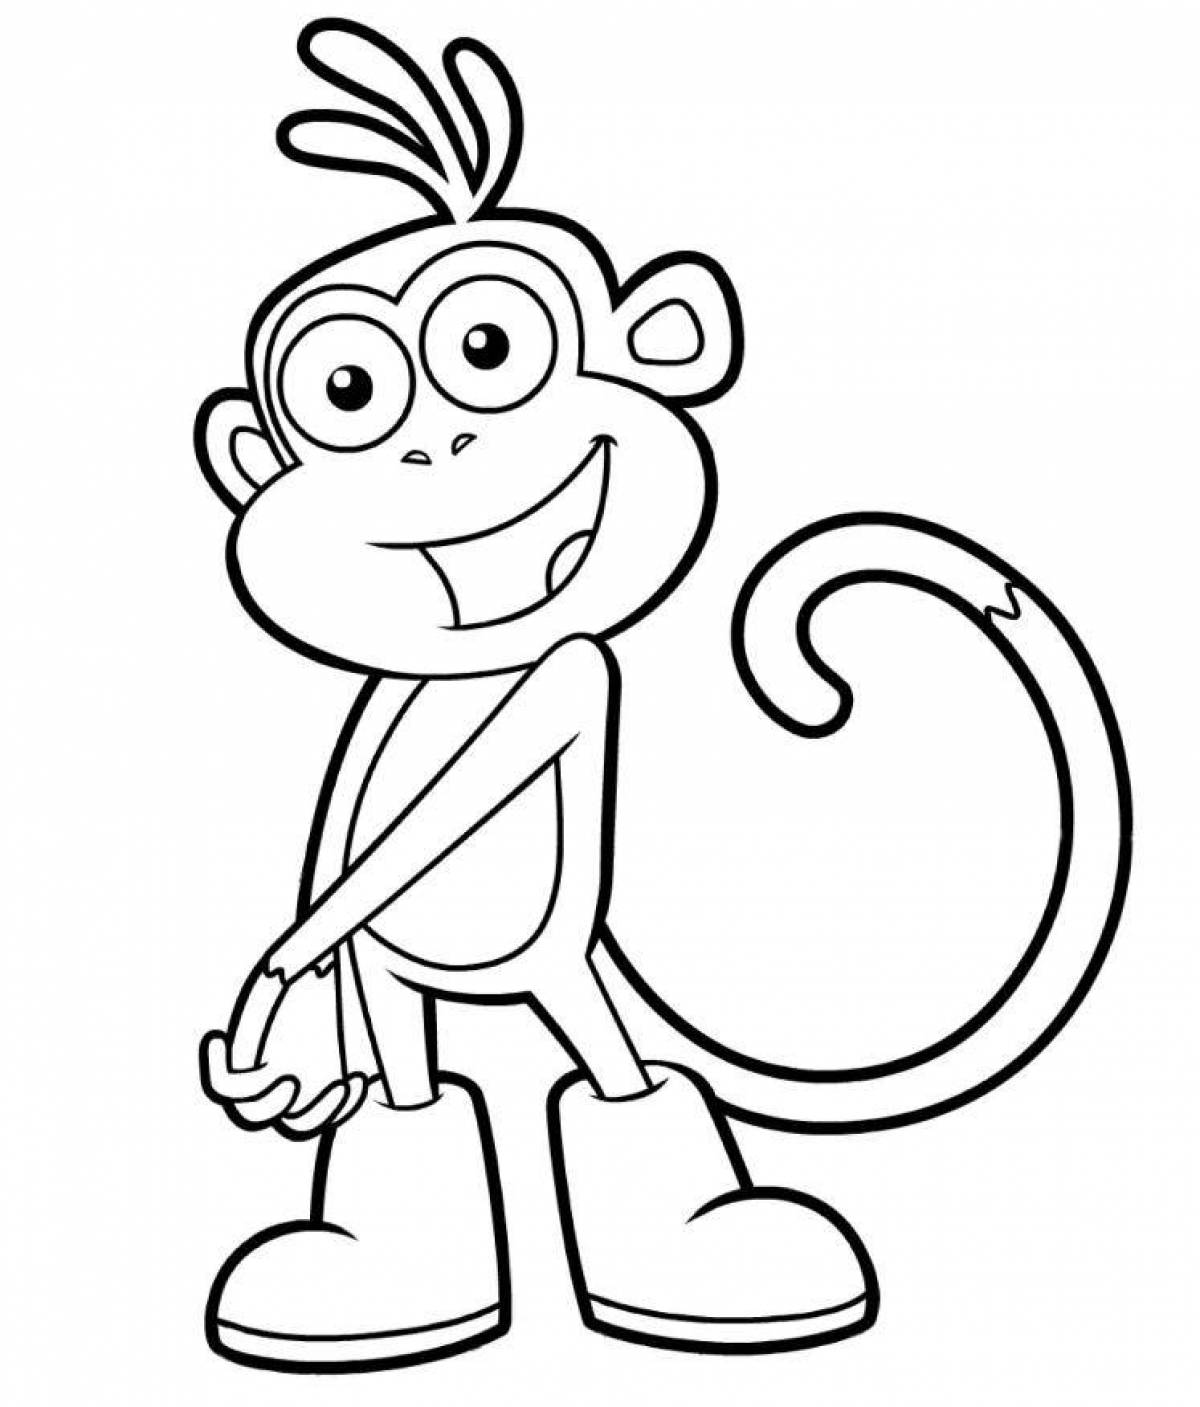 Остроумная раскраска обезьяна для детей